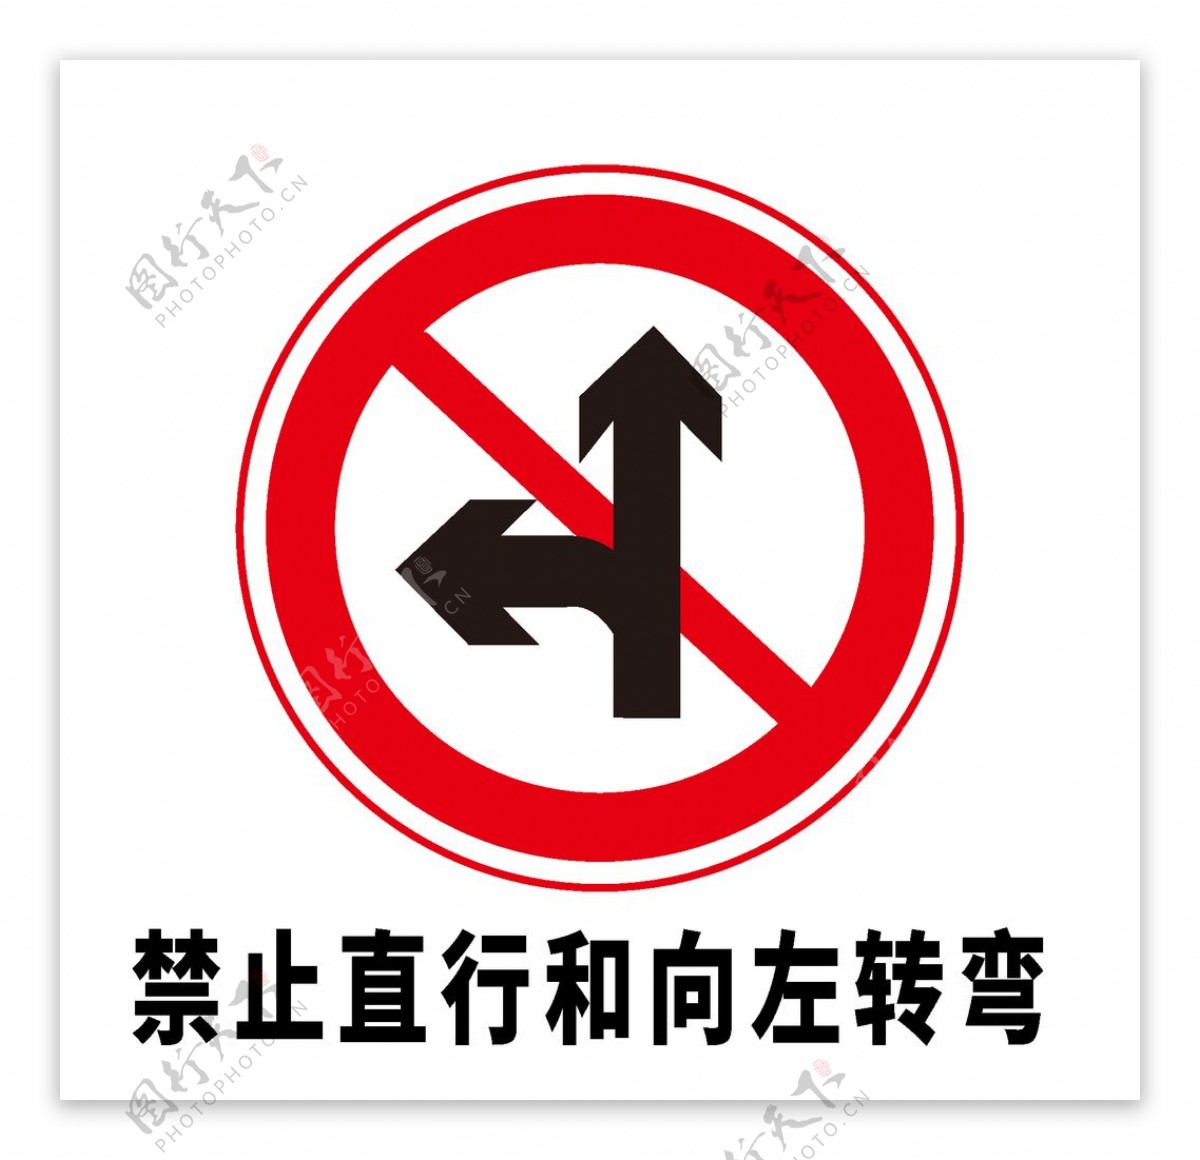 矢量交通标志禁止直行和向左转图片